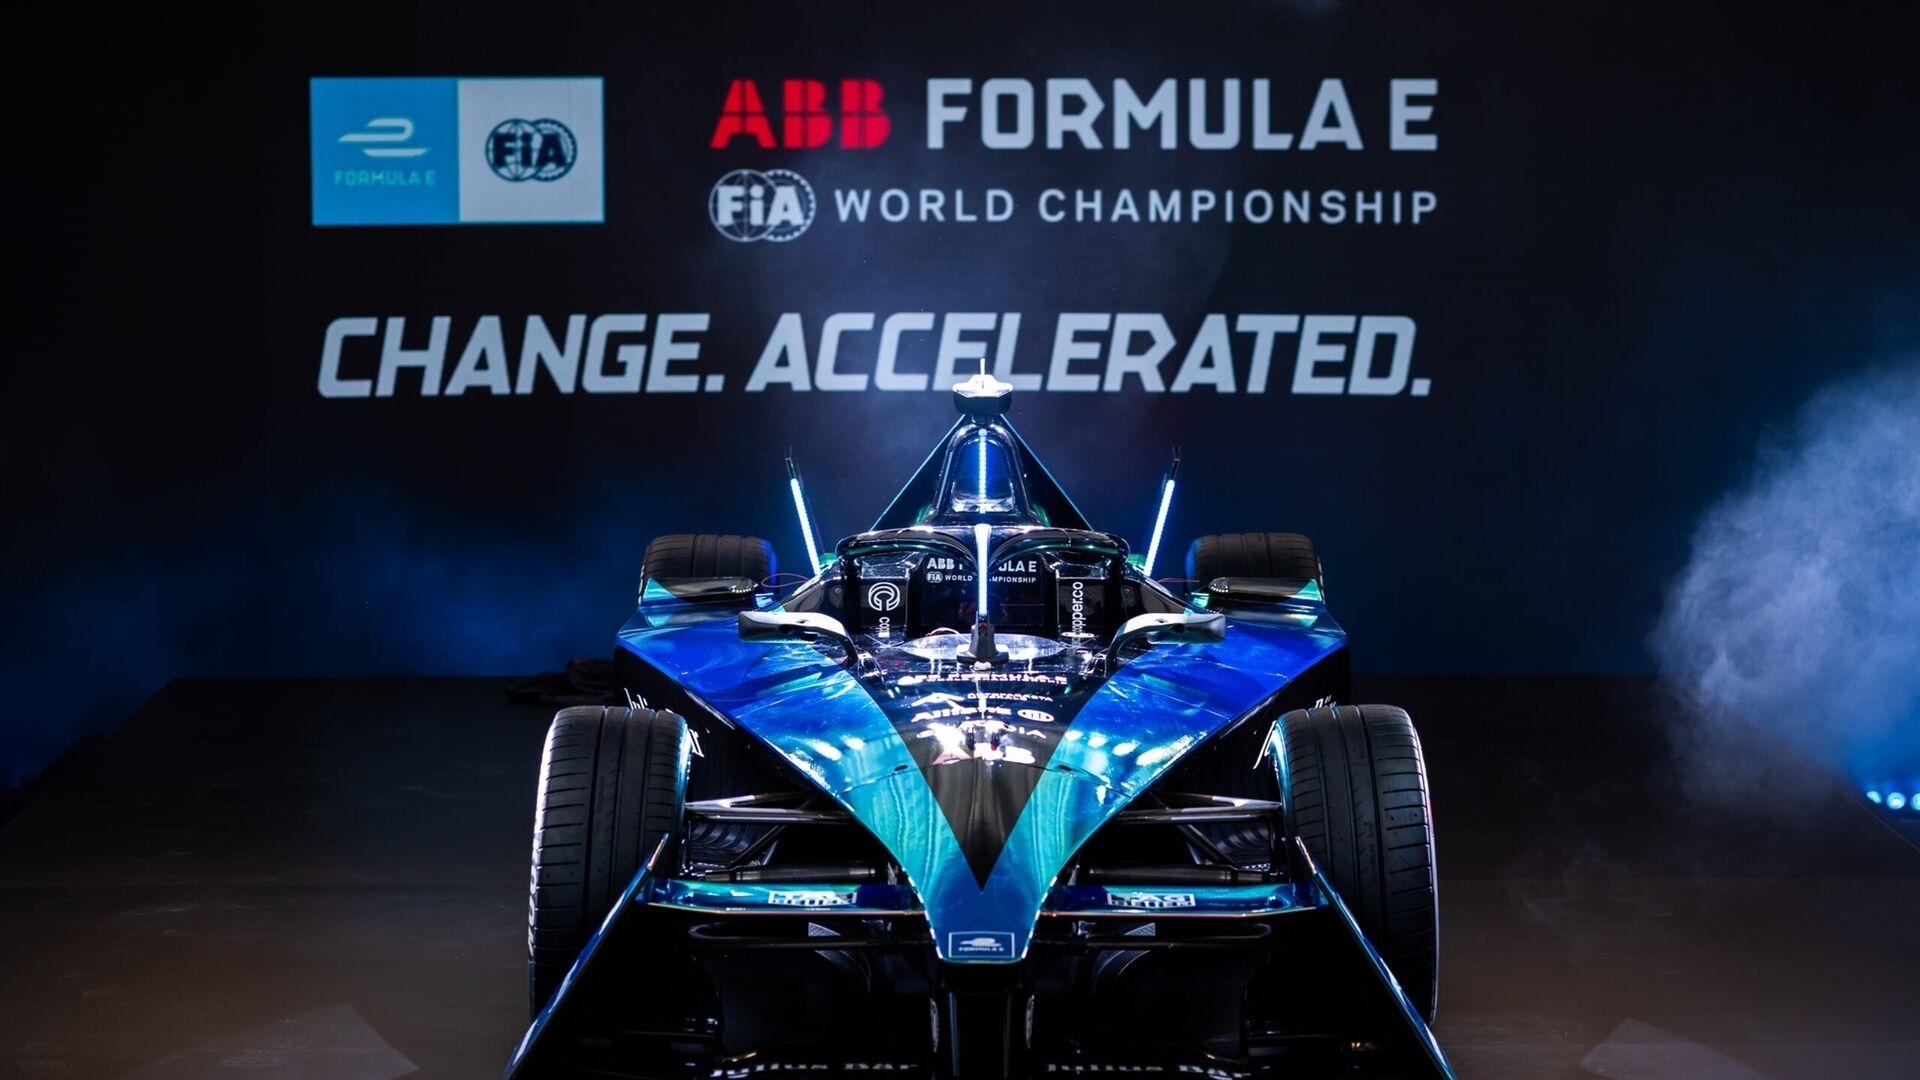 Gen3: يعد Gen3 ذو المقعد الواحد مبتكرًا للغاية وسيتم استخدامه بدءًا من الموسم التاسع لبطولة FIA ABB Formula E العالمية: تربيع الدائرة بين الأداء والاستدامة